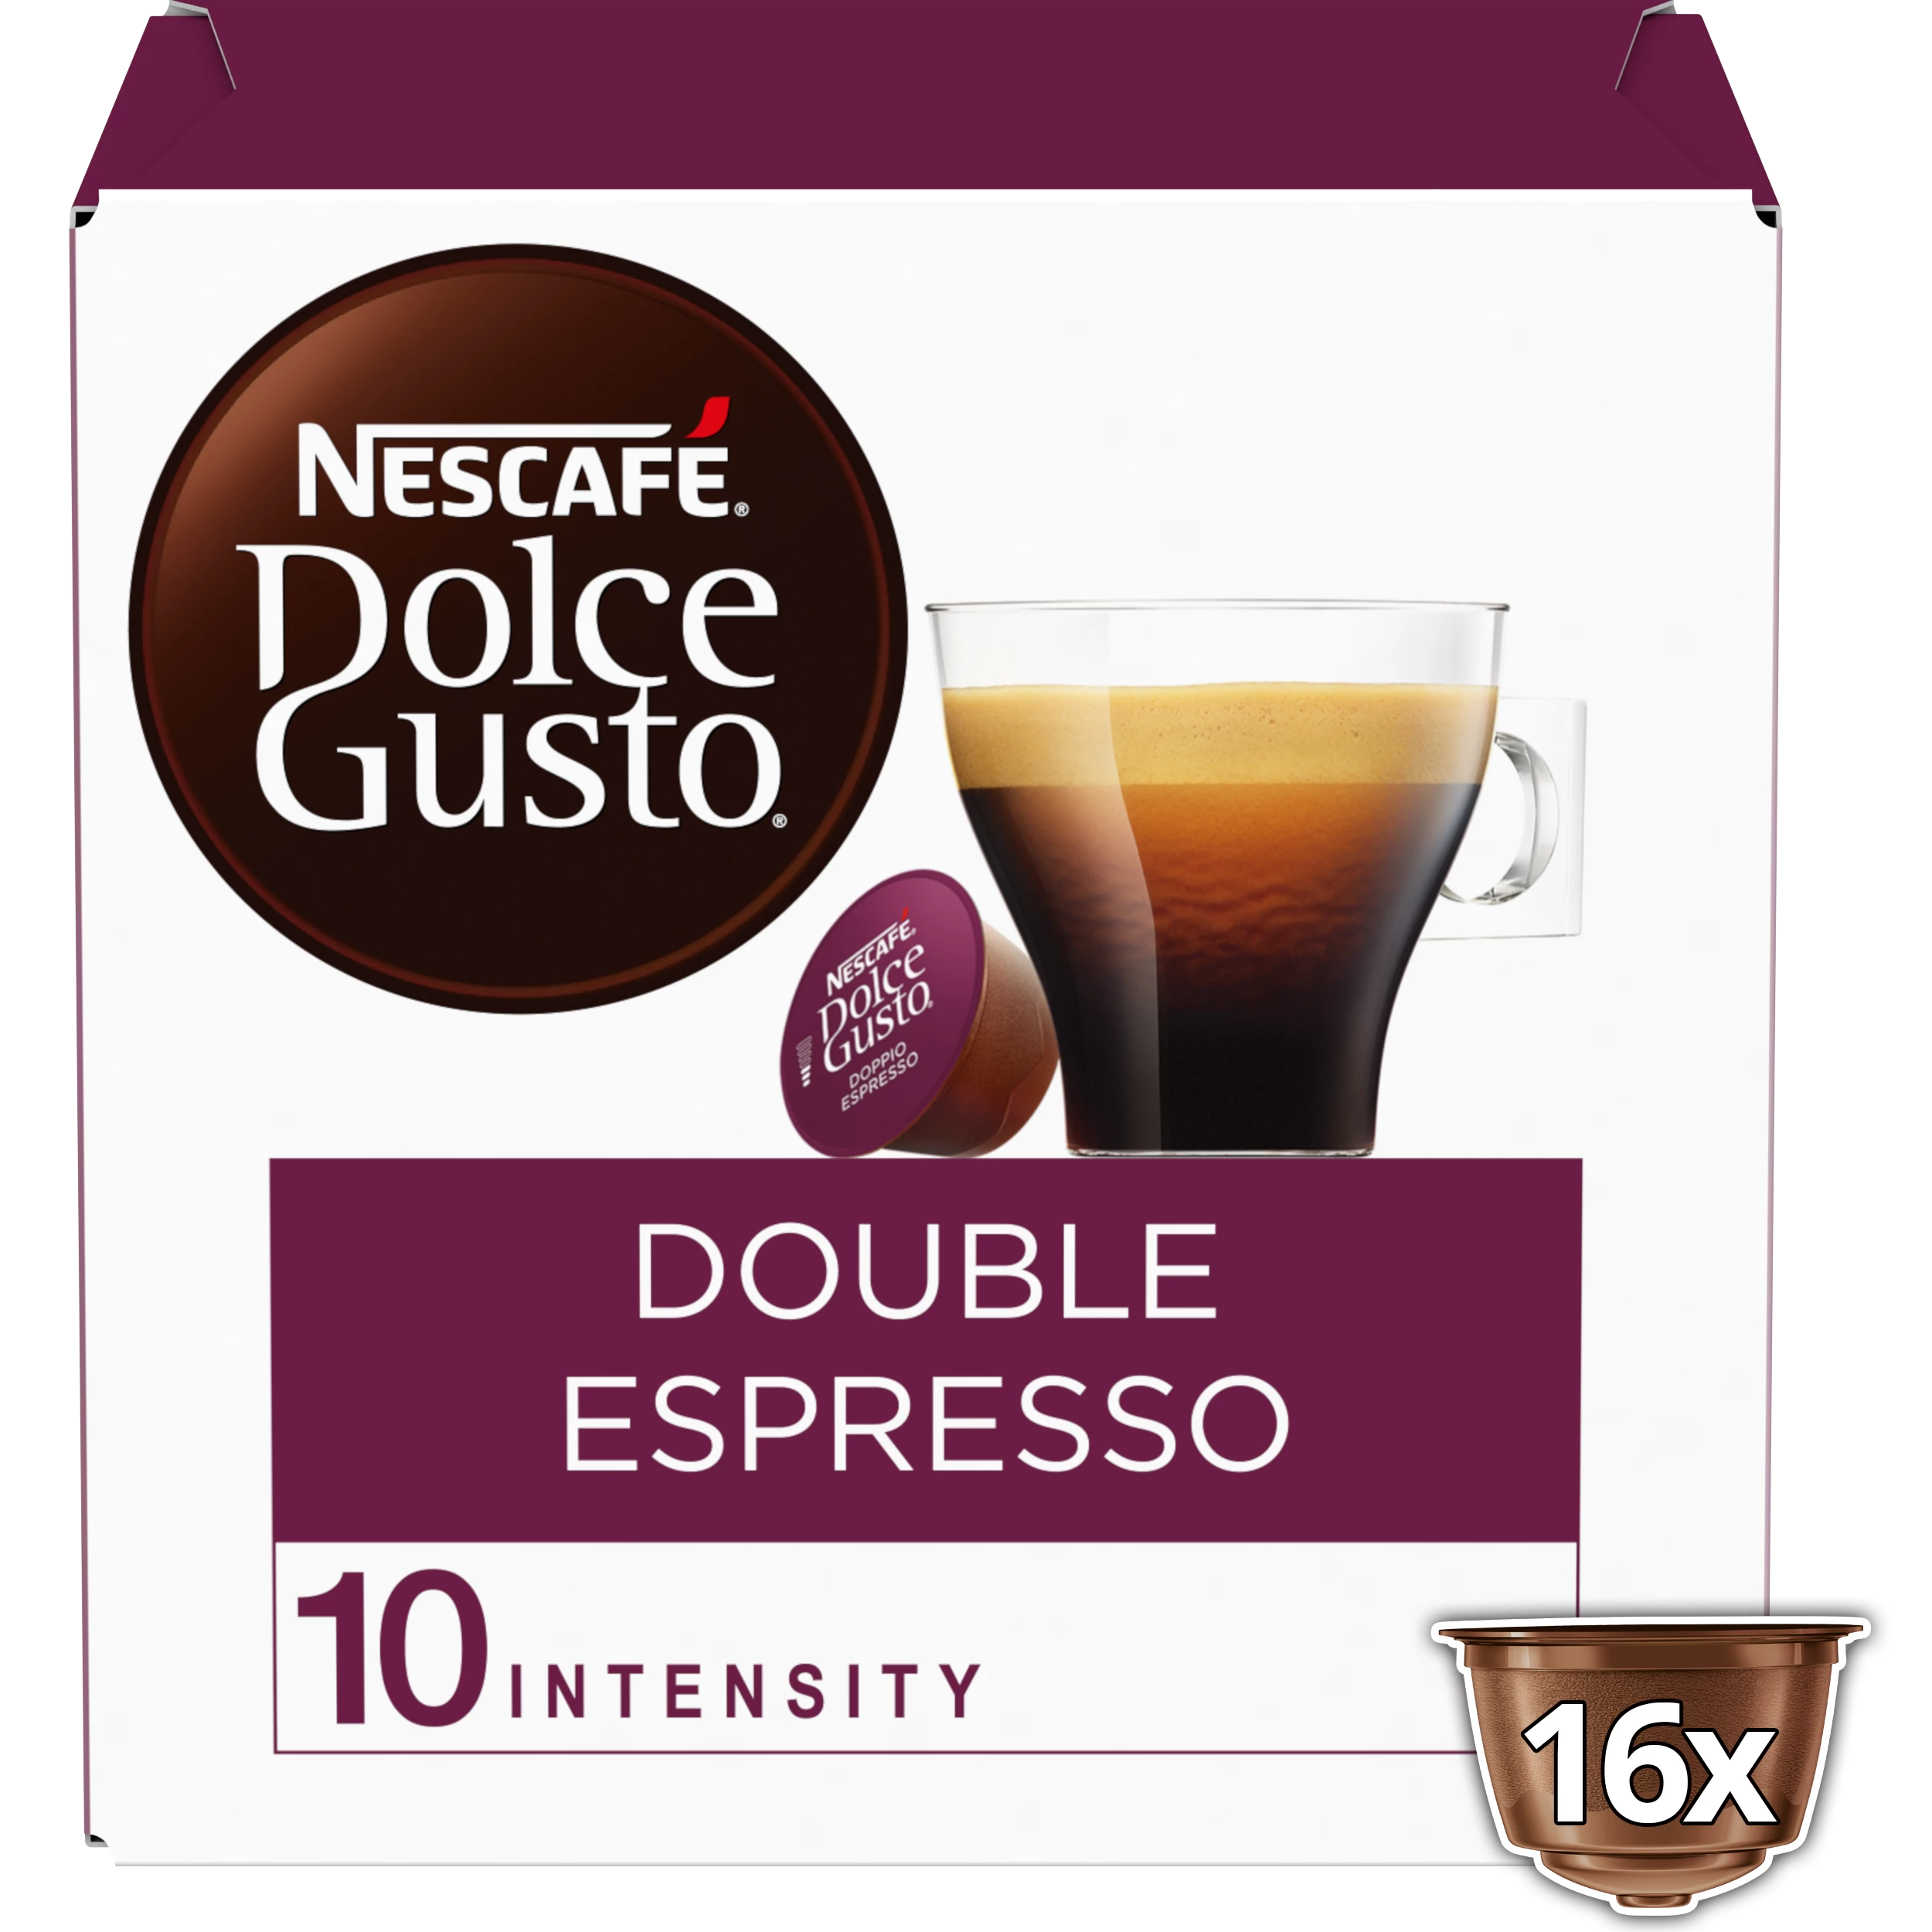 胶囊咖啡厅双份浓缩咖啡兼容 Dolce Gusto x16； 136克 - NESCAFE DOLCE GUSTO